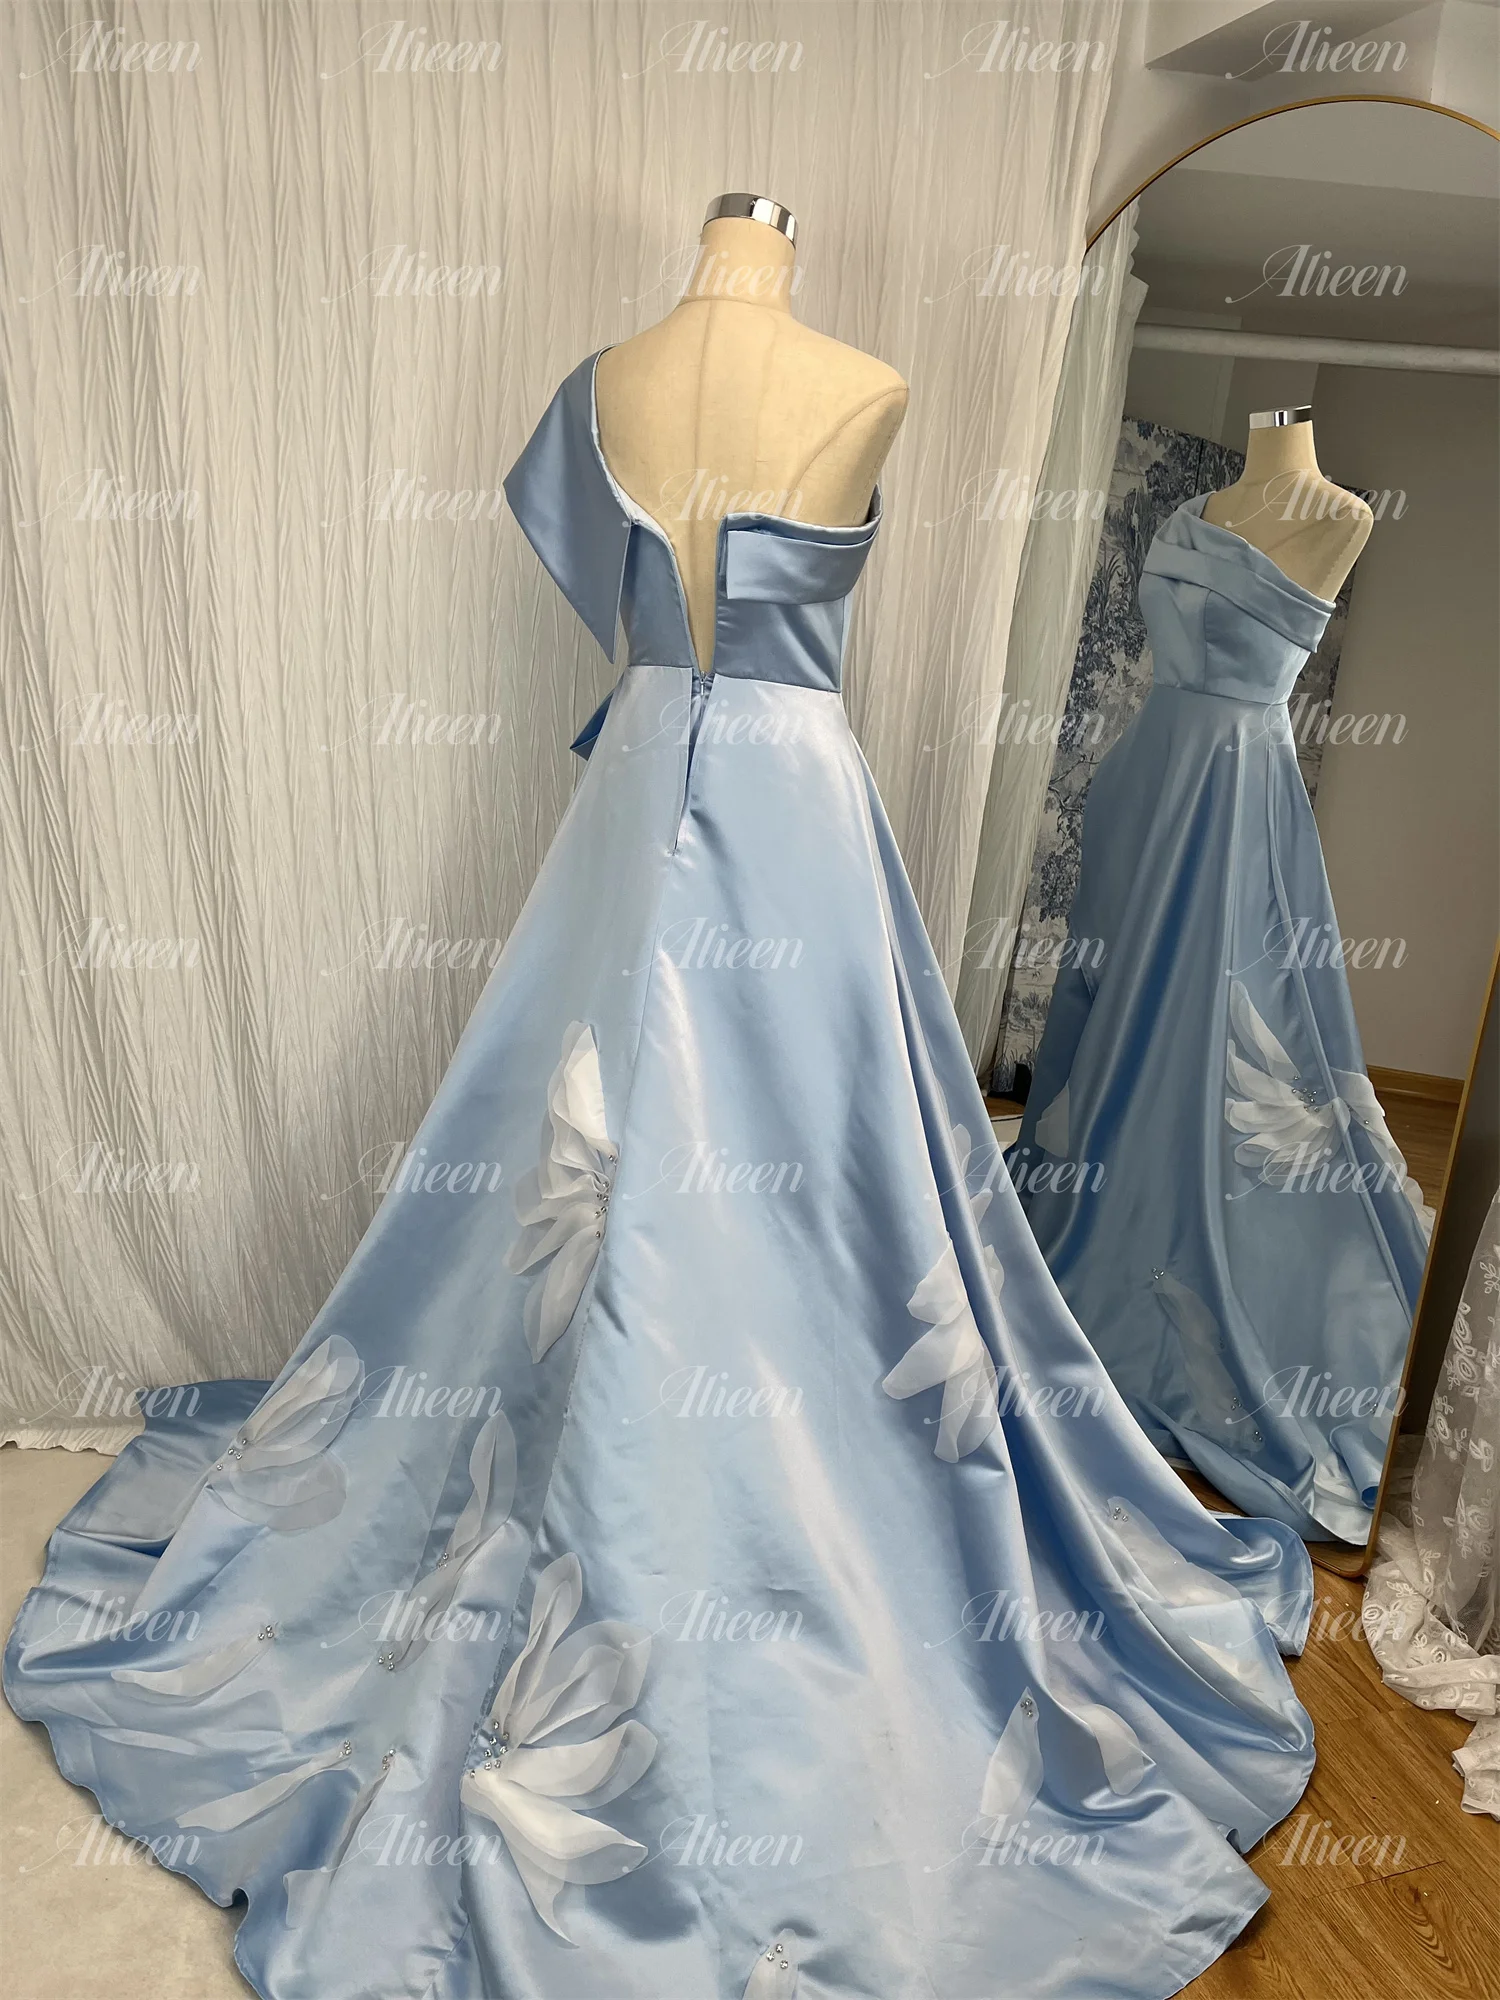 Aileen modrá satén elegantní lotos aršík kvést lodni linky dámská večírek šaty žena maturitní šaty pro ples nevěsta formální svatební